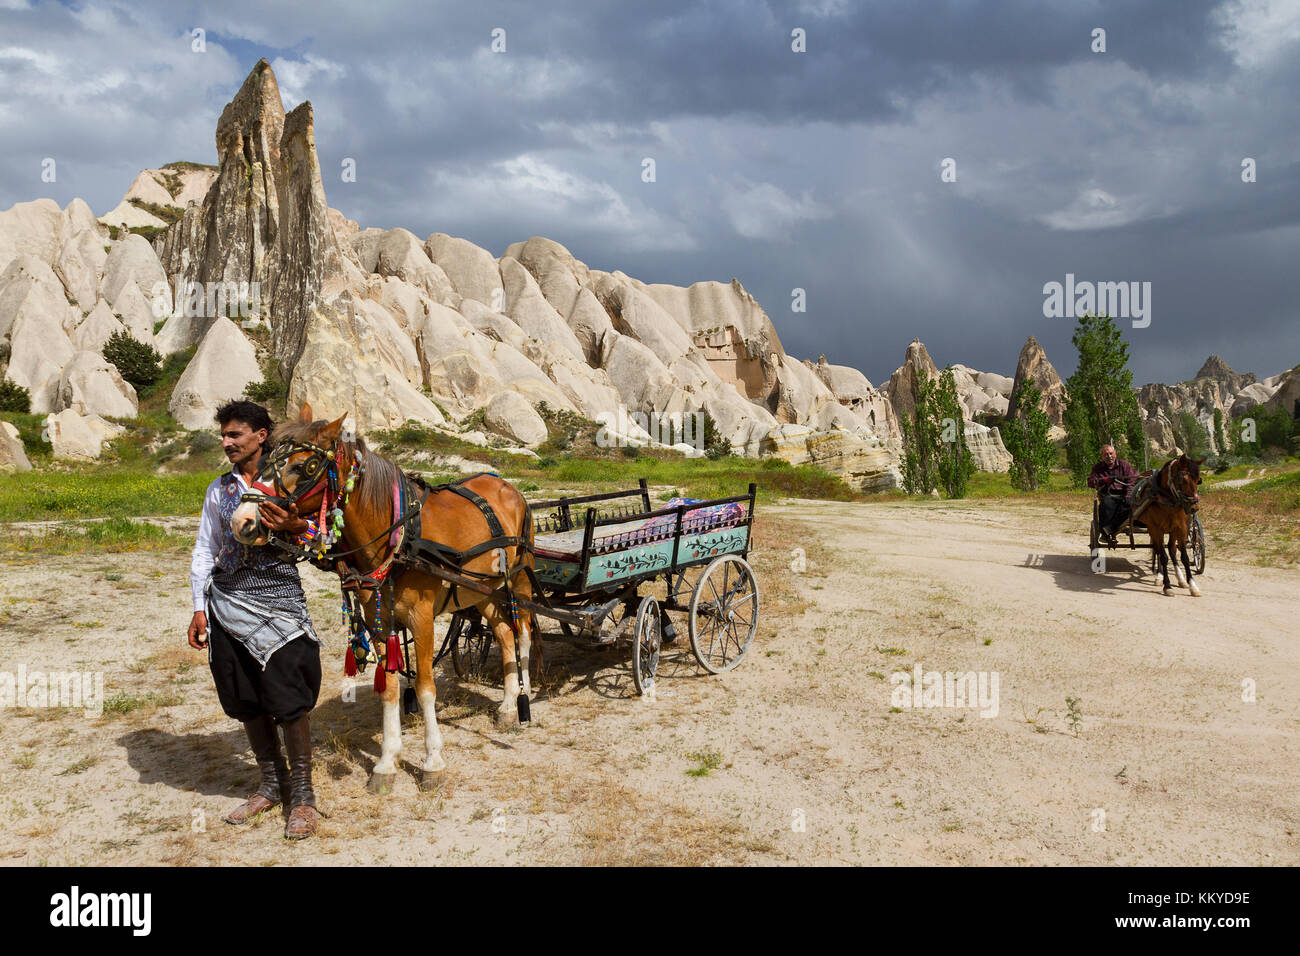 Les charrettes à cheval avec des formations de roche volcanique en arrière-plan en Cappadoce, Turquie. Banque D'Images